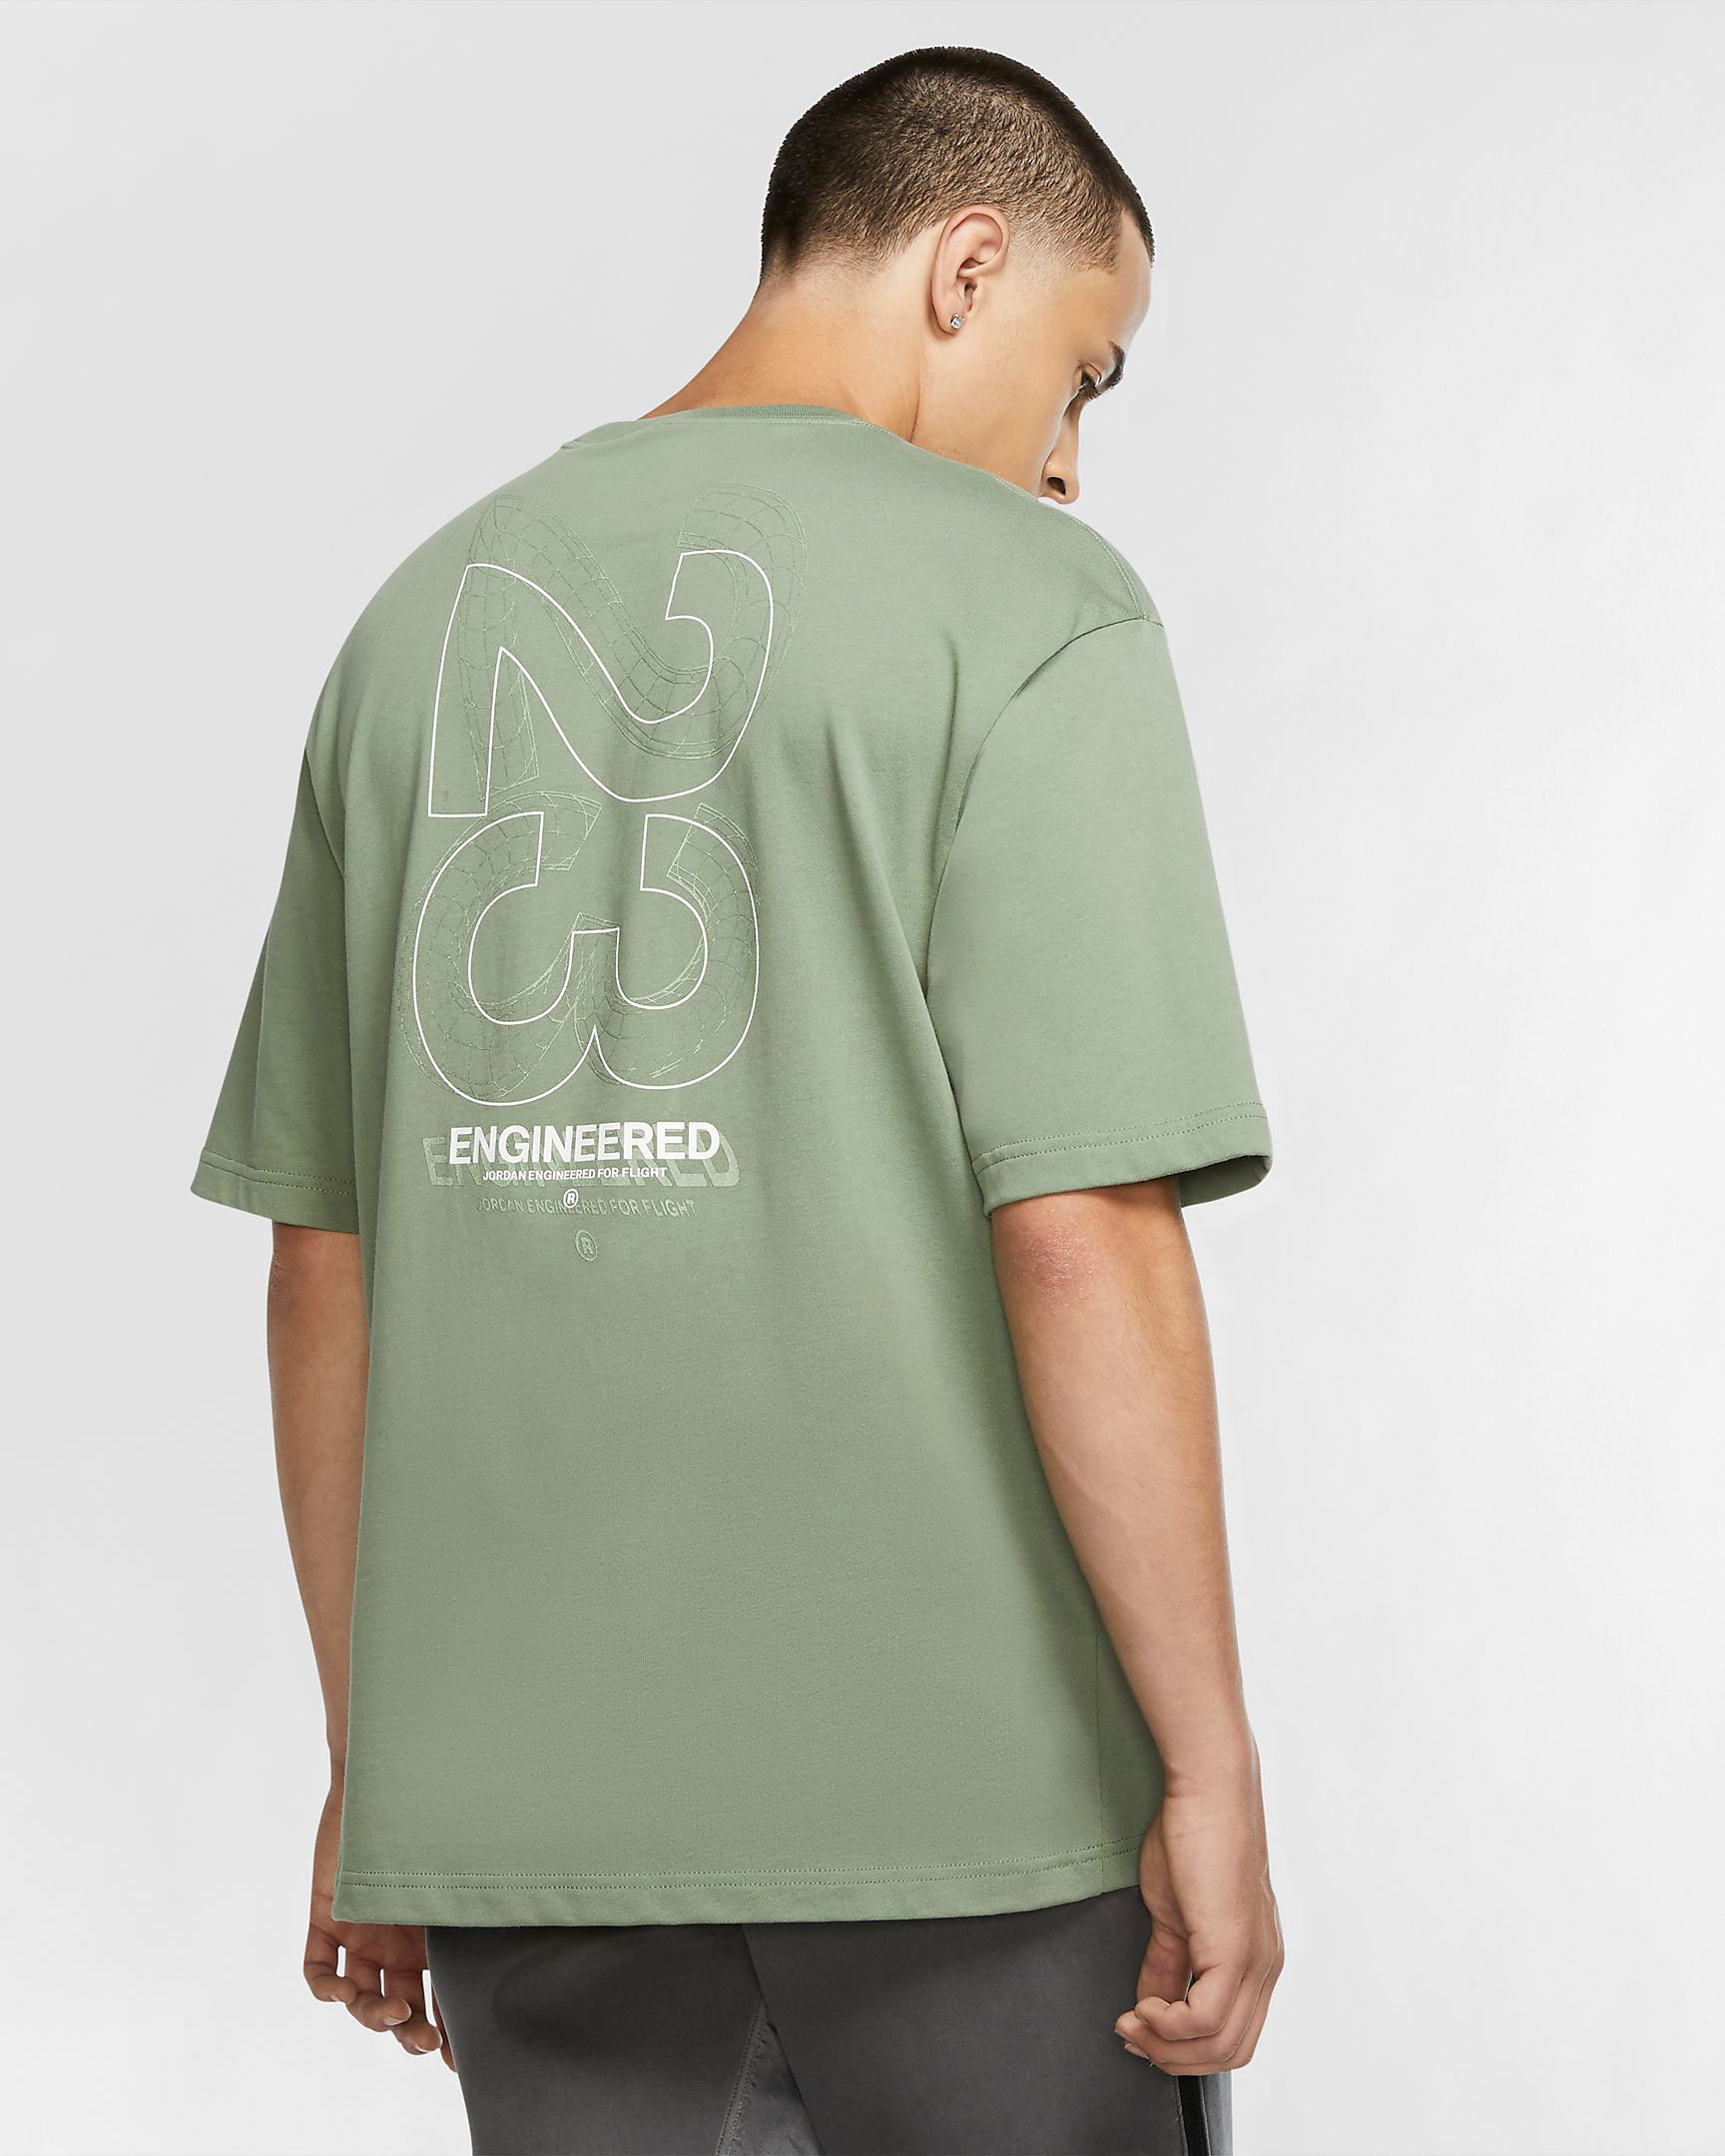 jordan-23-engineered-shirt-sage-green-2